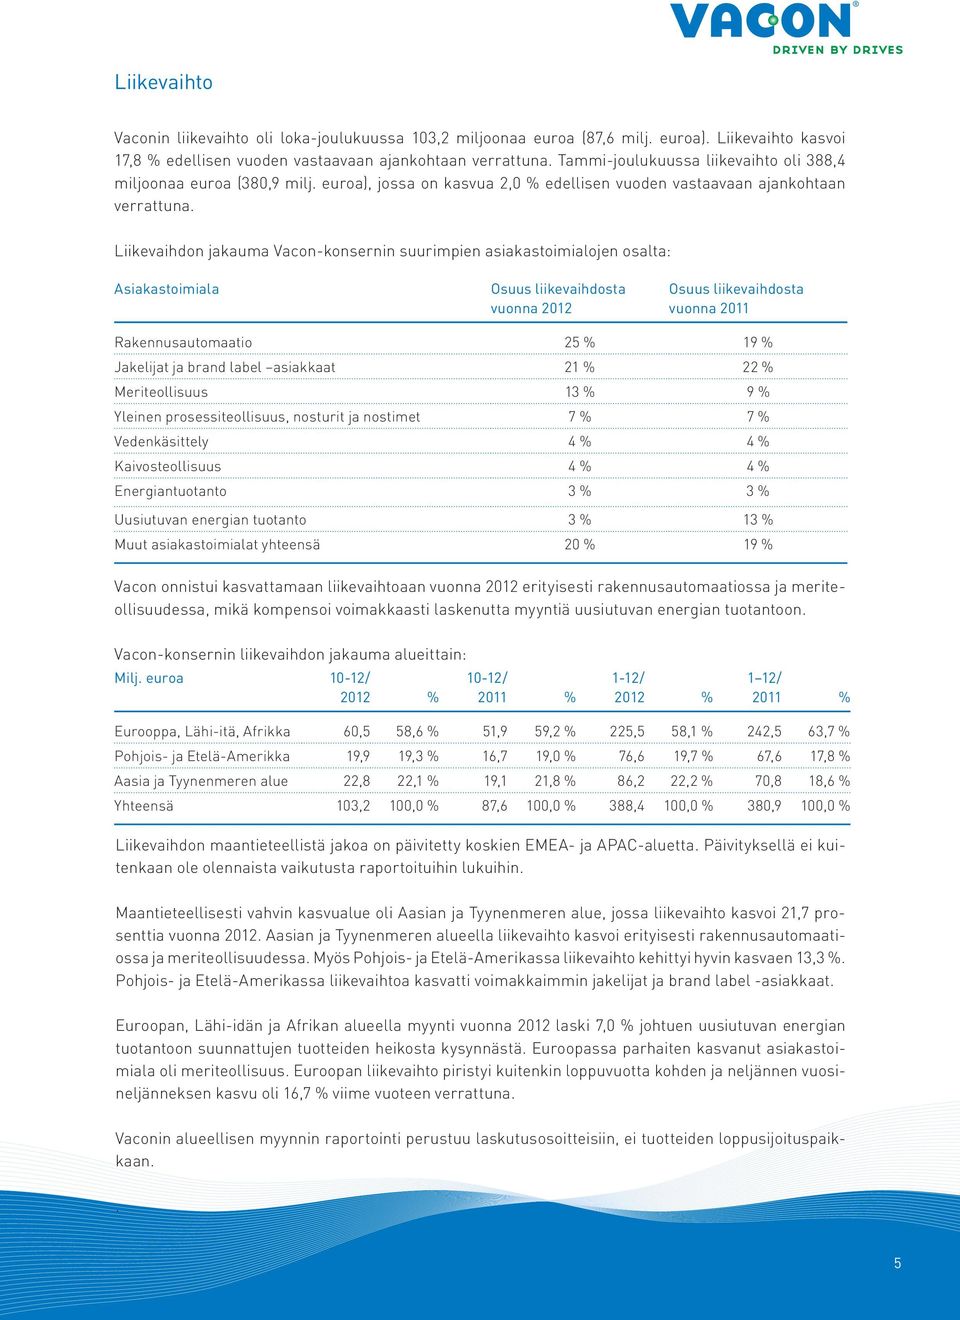 Liikevaihdon jakauma Vacon-konsernin suurimpien asiakastoimialojen osalta: Asiakastoimiala Osuus liikevaihdosta vuonna 2012 Osuus liikevaihdosta vuonna 2011 Rakennusautomaatio 25 % 19 % Jakelijat ja